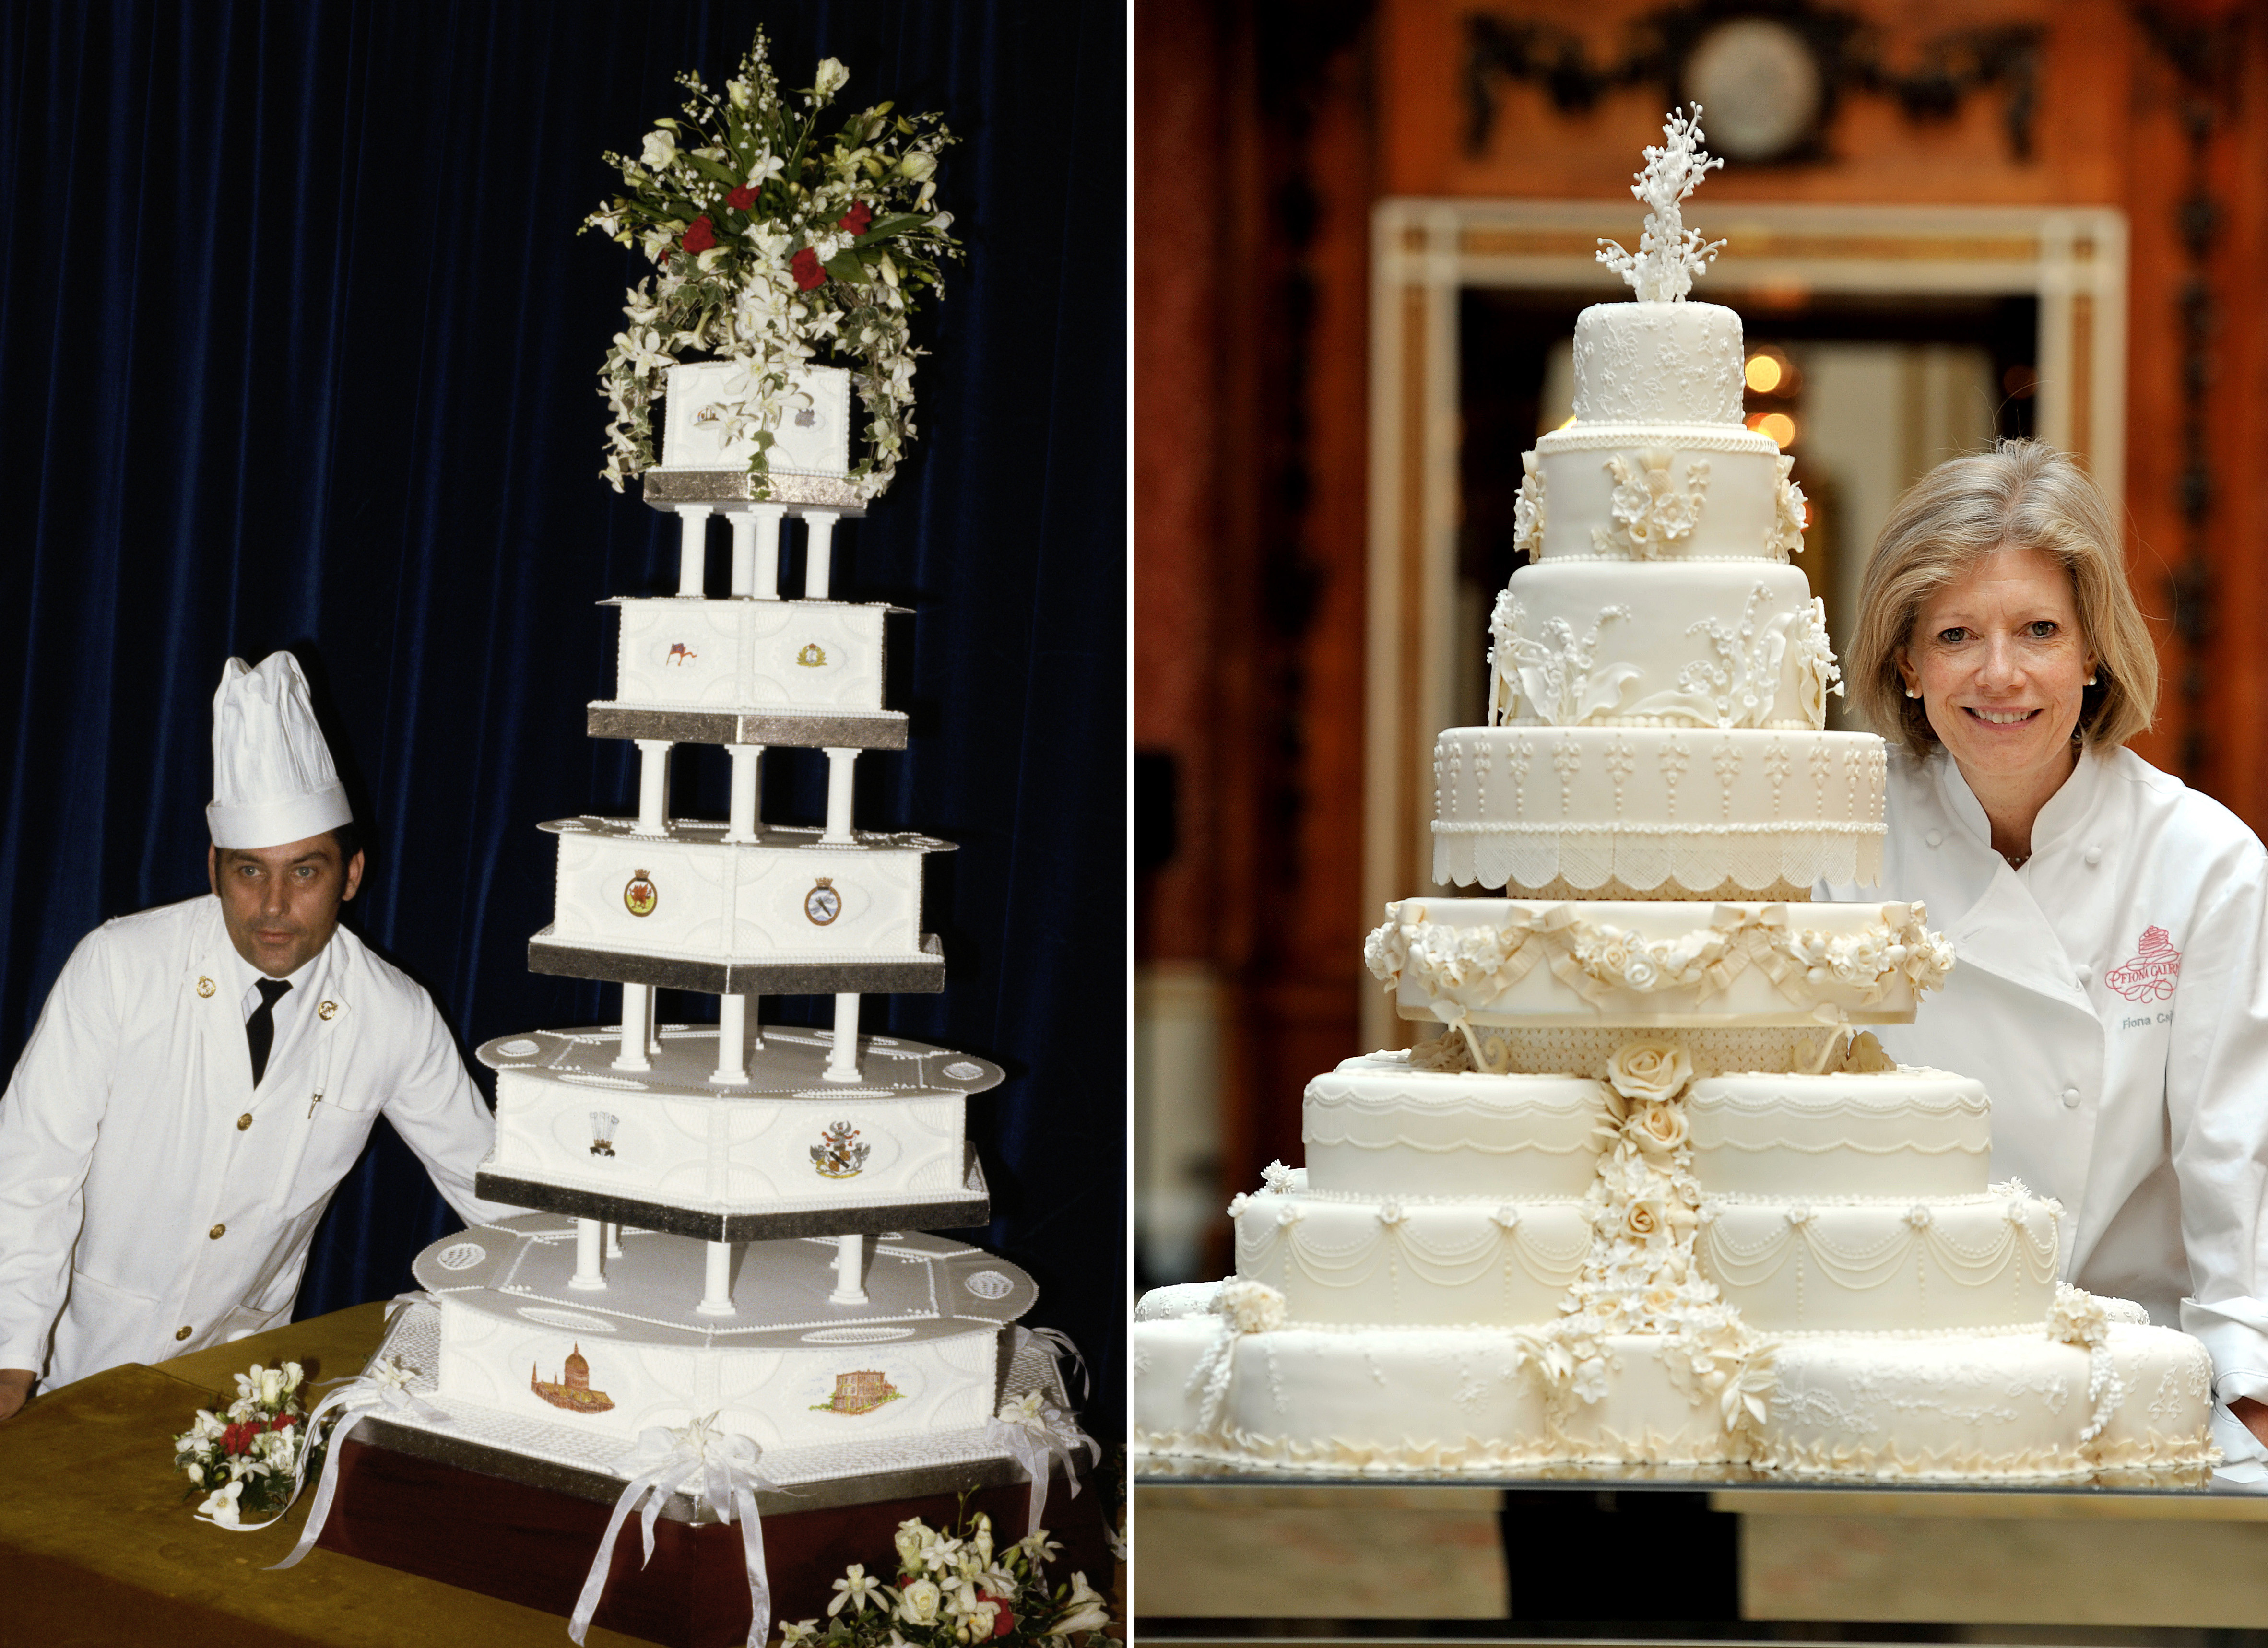 Princess Diana Wedding Cakes
 Princess Diana Wedding Cake Piece Owned By Man for Decades